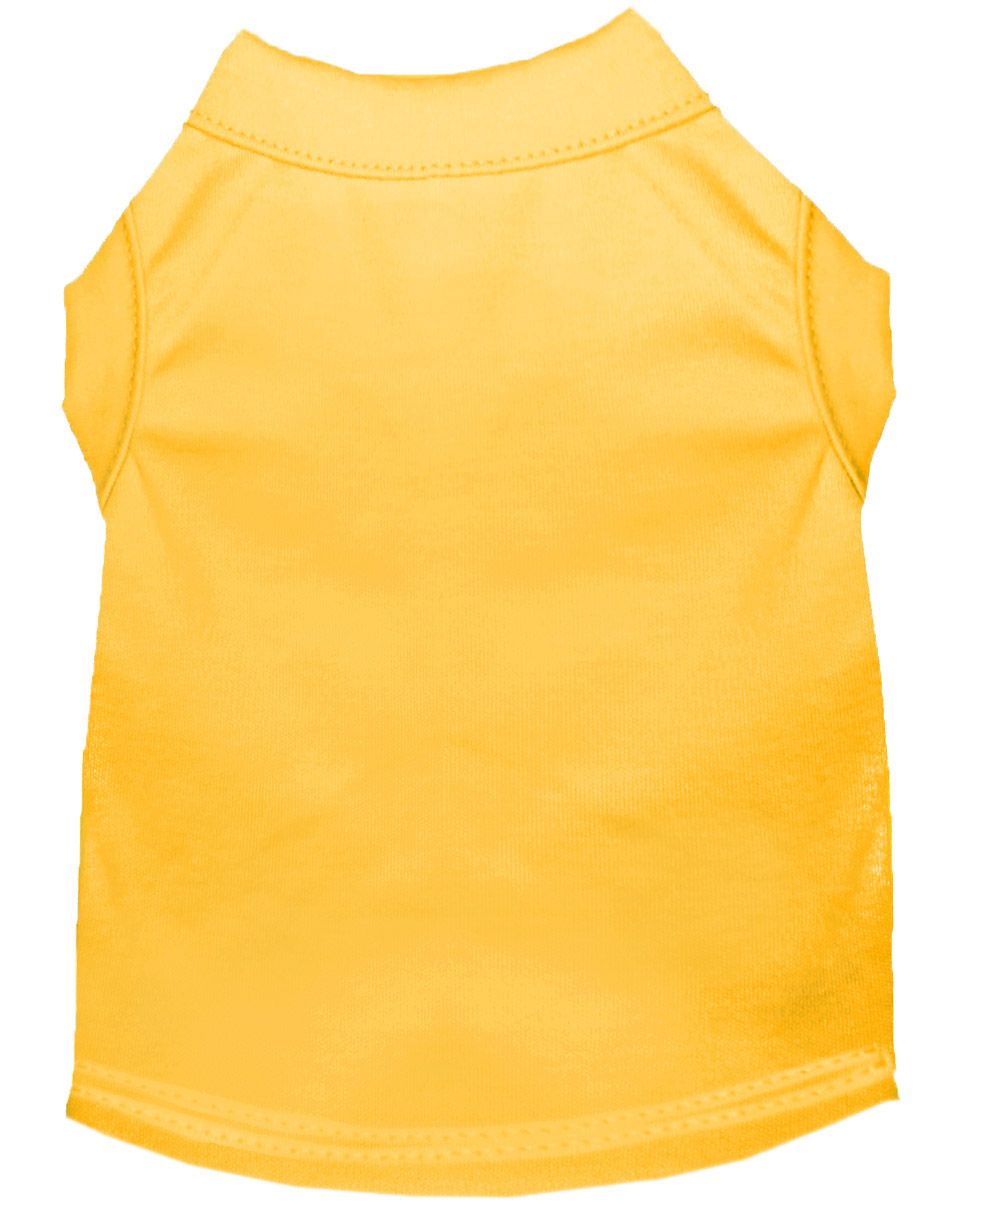 Sunshine Yellow Dog Shirt